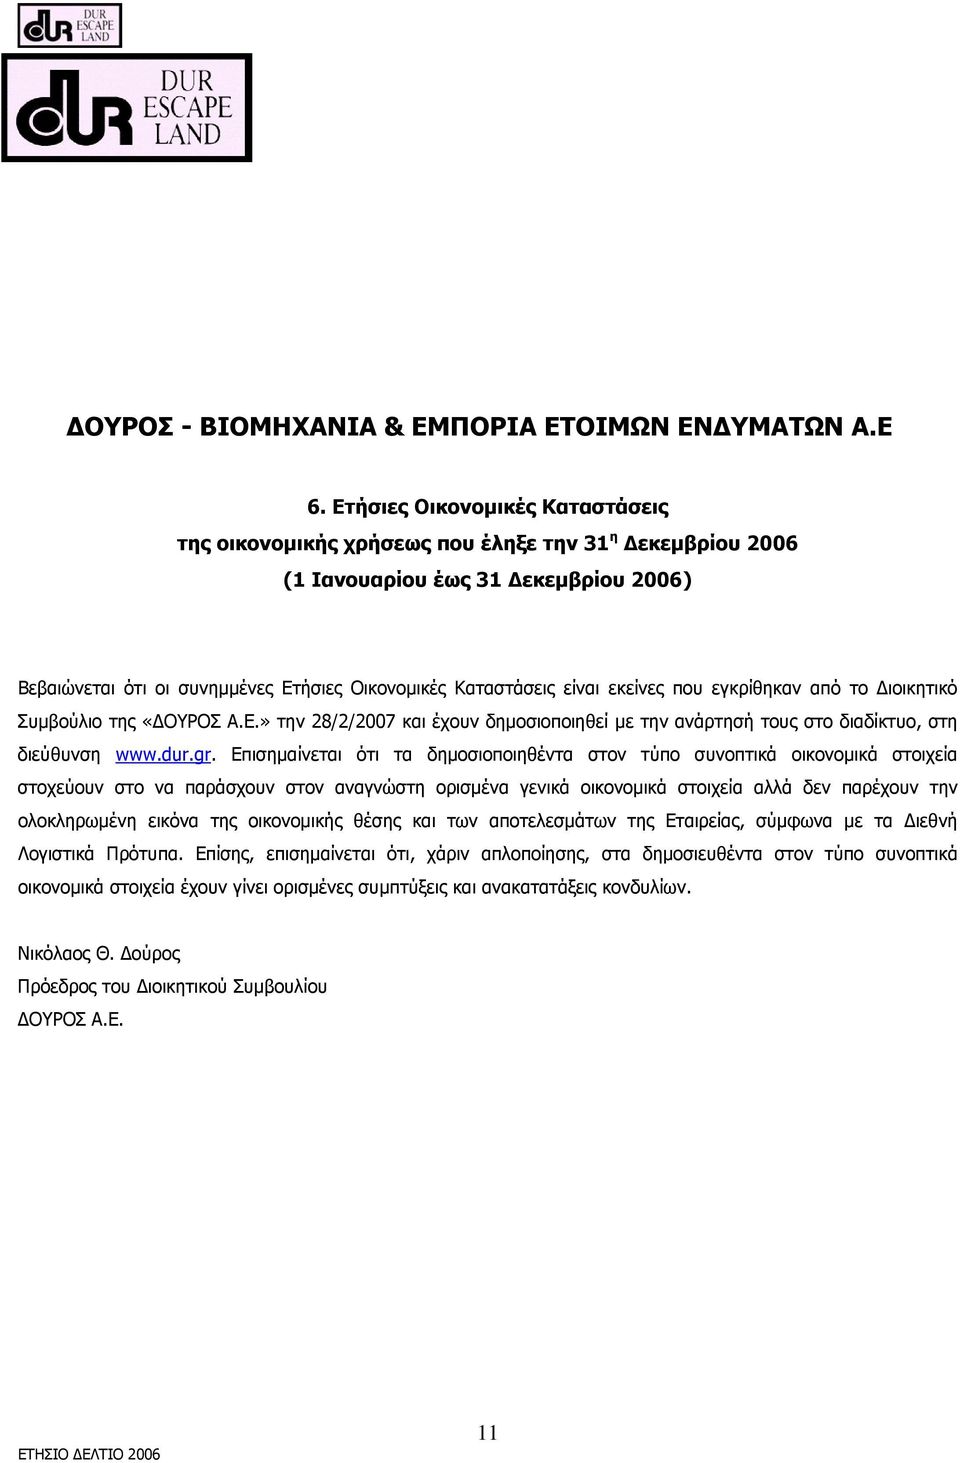 εκείνες που εγκρίθηκαν από το Διοικητικό Συμβούλιο της «ΔΟΥΡΟΣ Α.Ε.» την 28/2/2007 και έχουν δημοσιοποιηθεί με την ανάρτησή τους στο διαδίκτυο, στη διεύθυνση www.dur.gr.